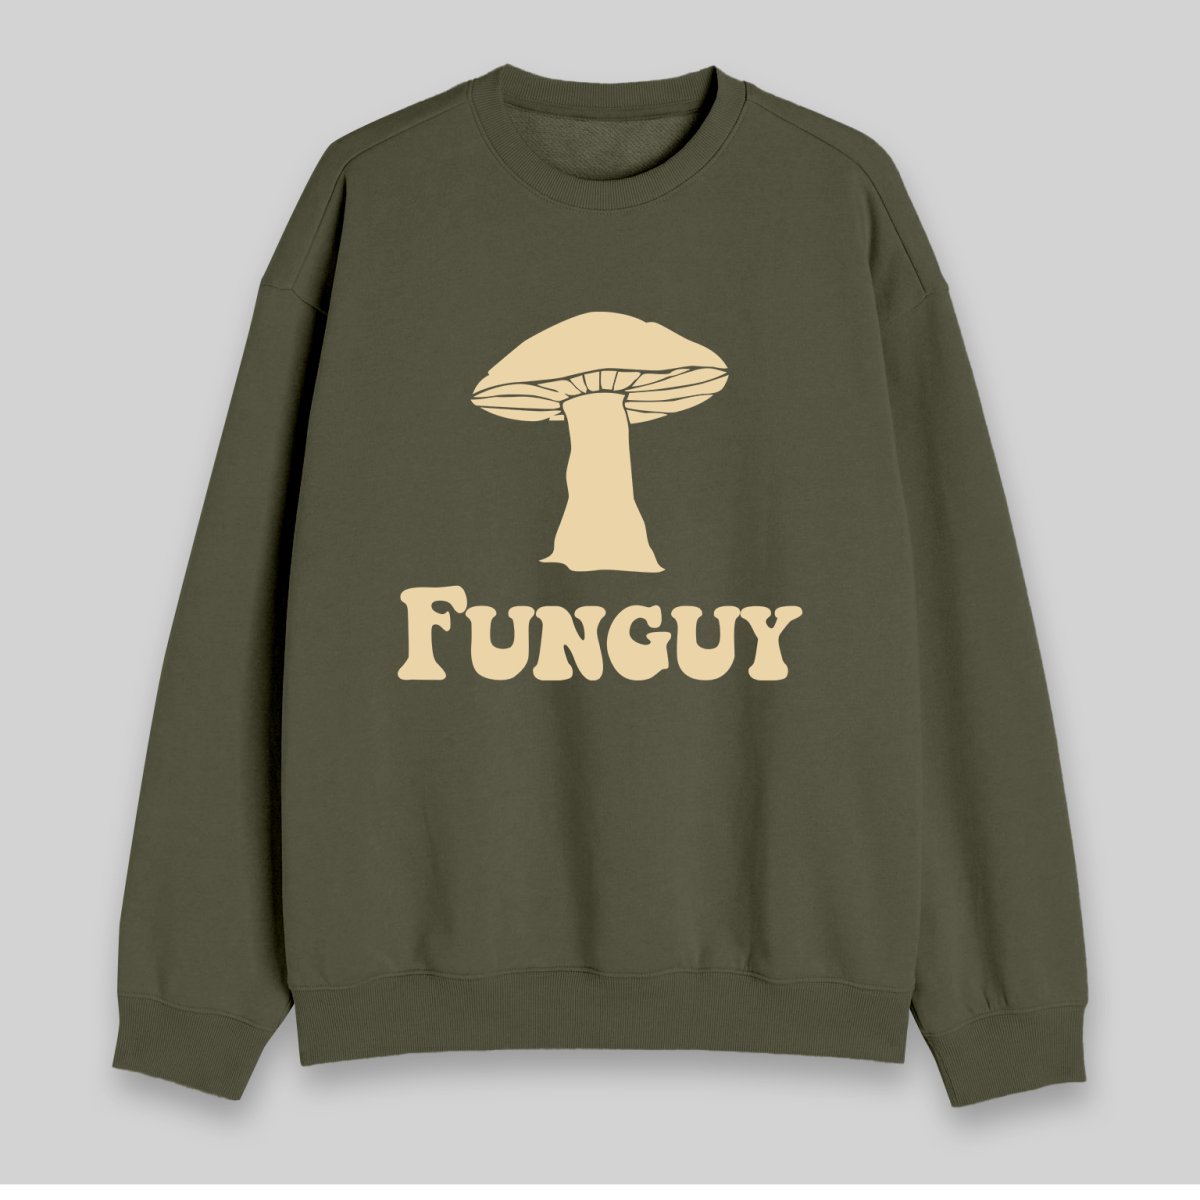 Fungi Fun Guy Sweatshirt - Geeksoutfit